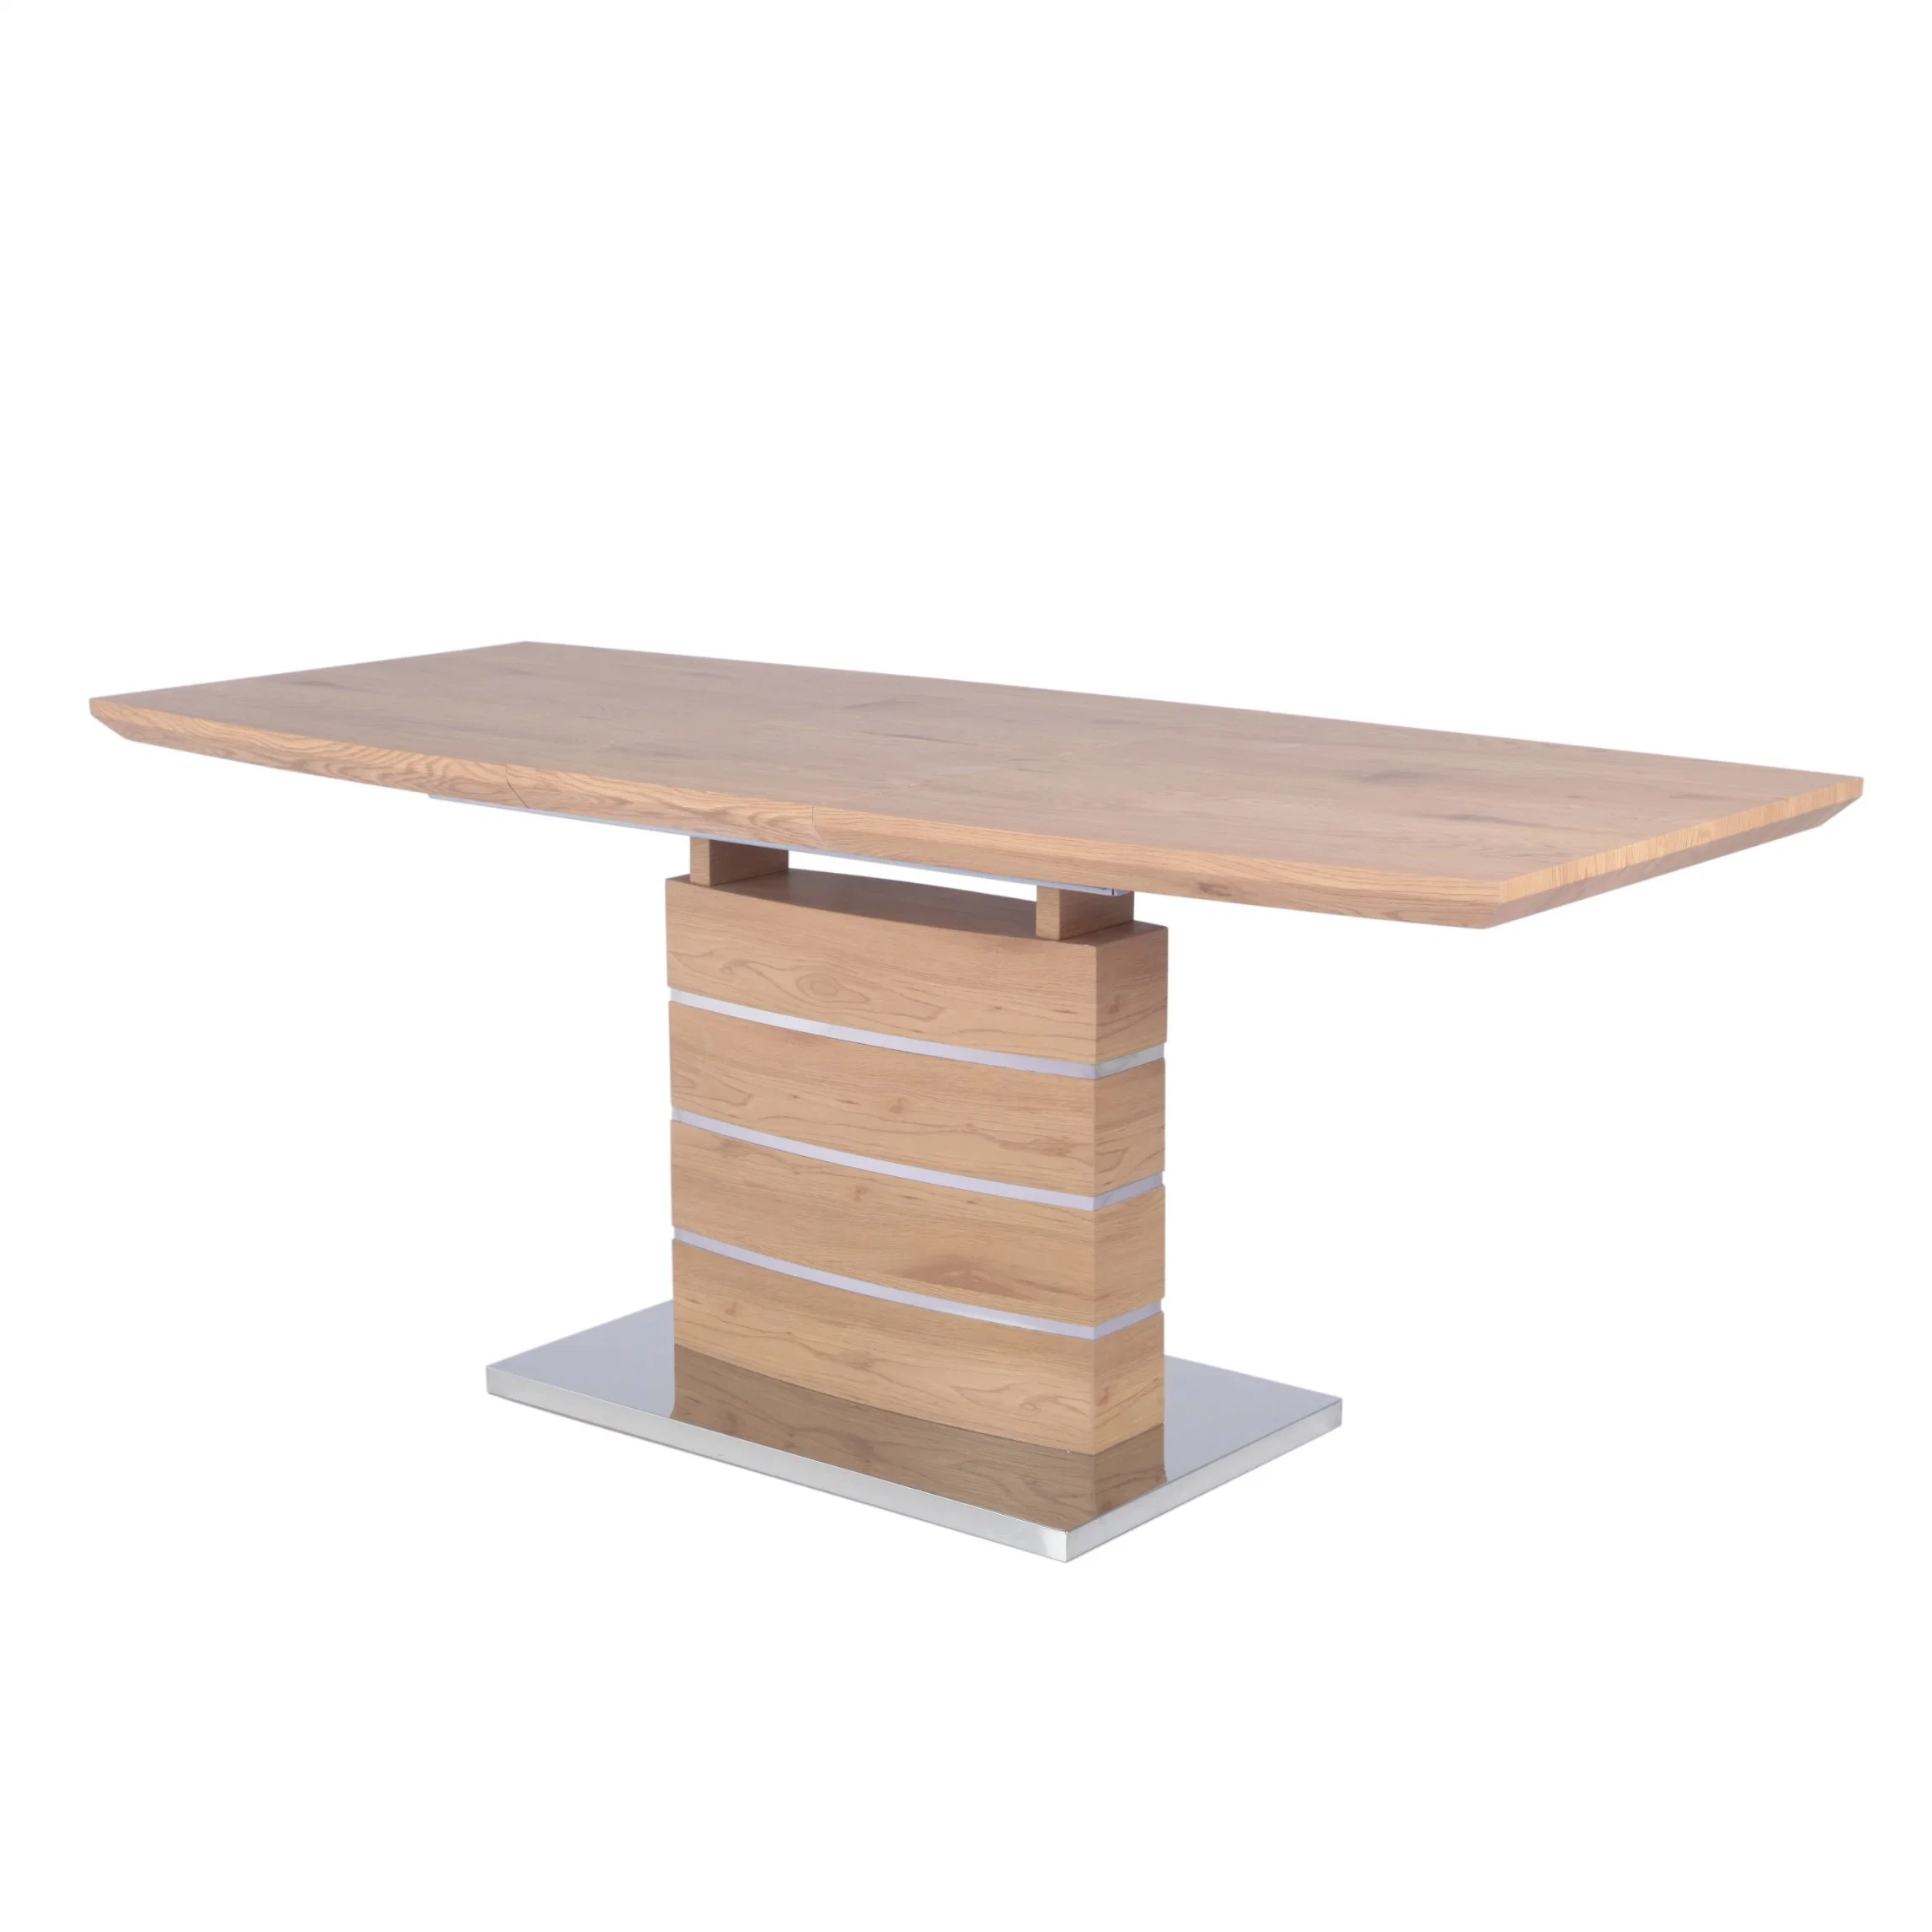 Fábrica de suministros de comedor Muebles MDF Color Roble comedor extensible Mesa con papel de color madera